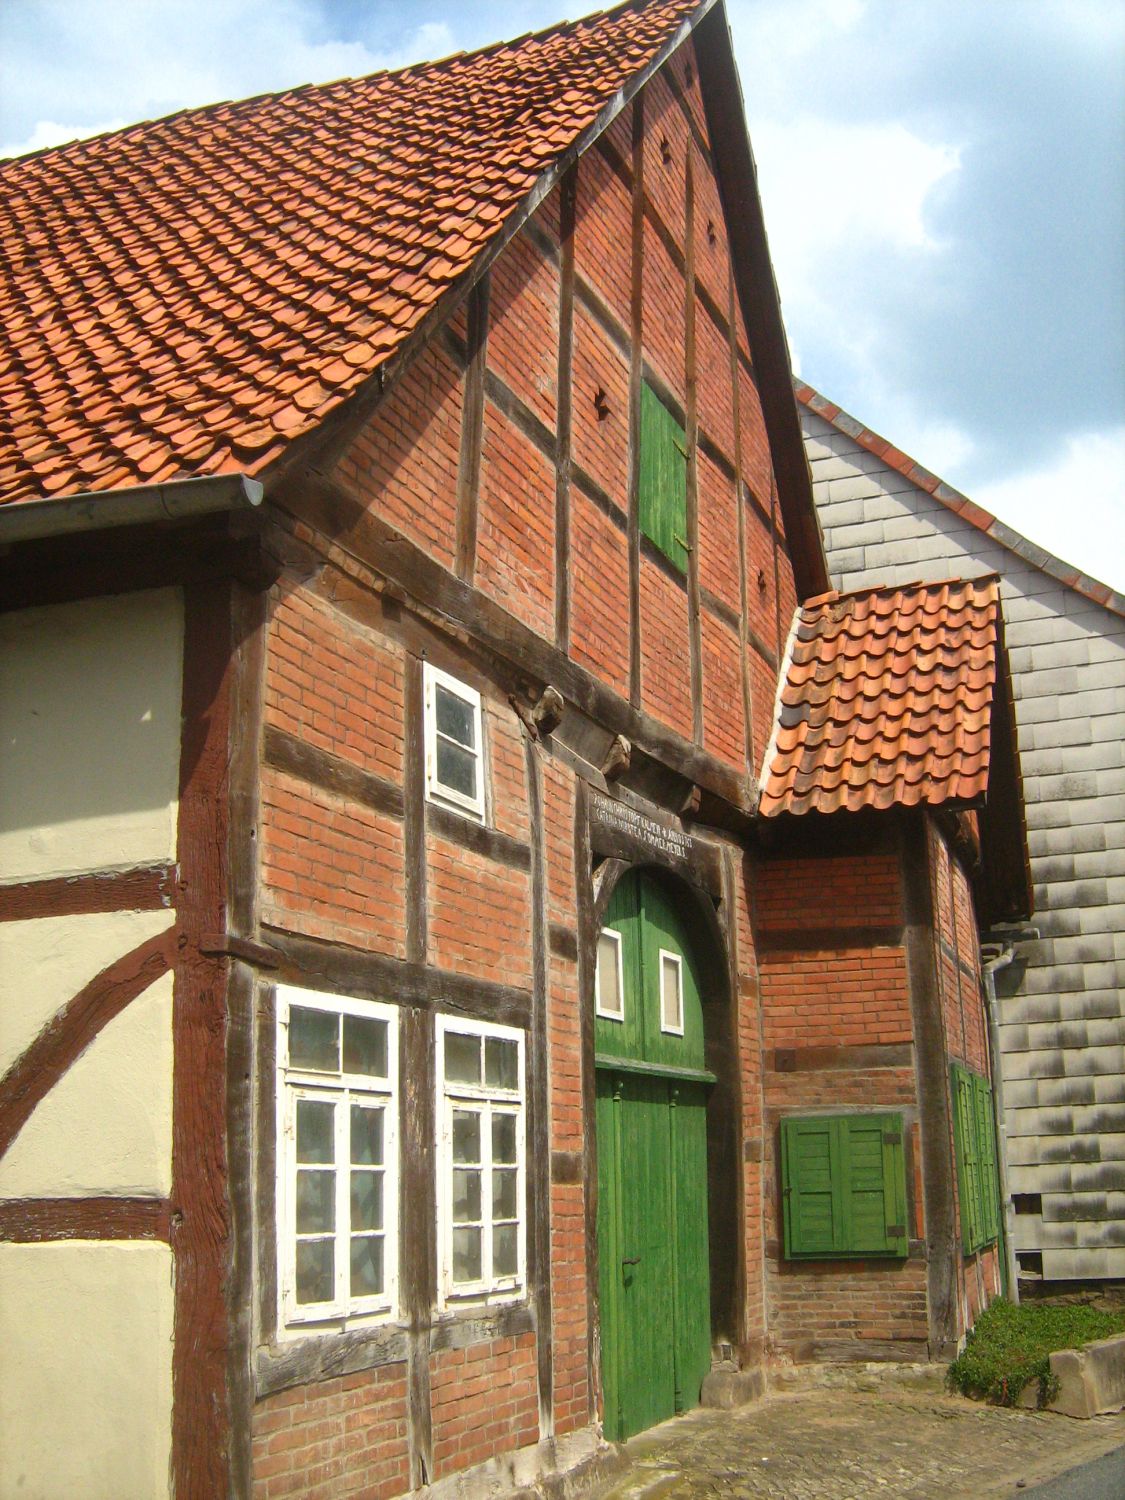 Lippisches Bauernhaus in Fischbeck